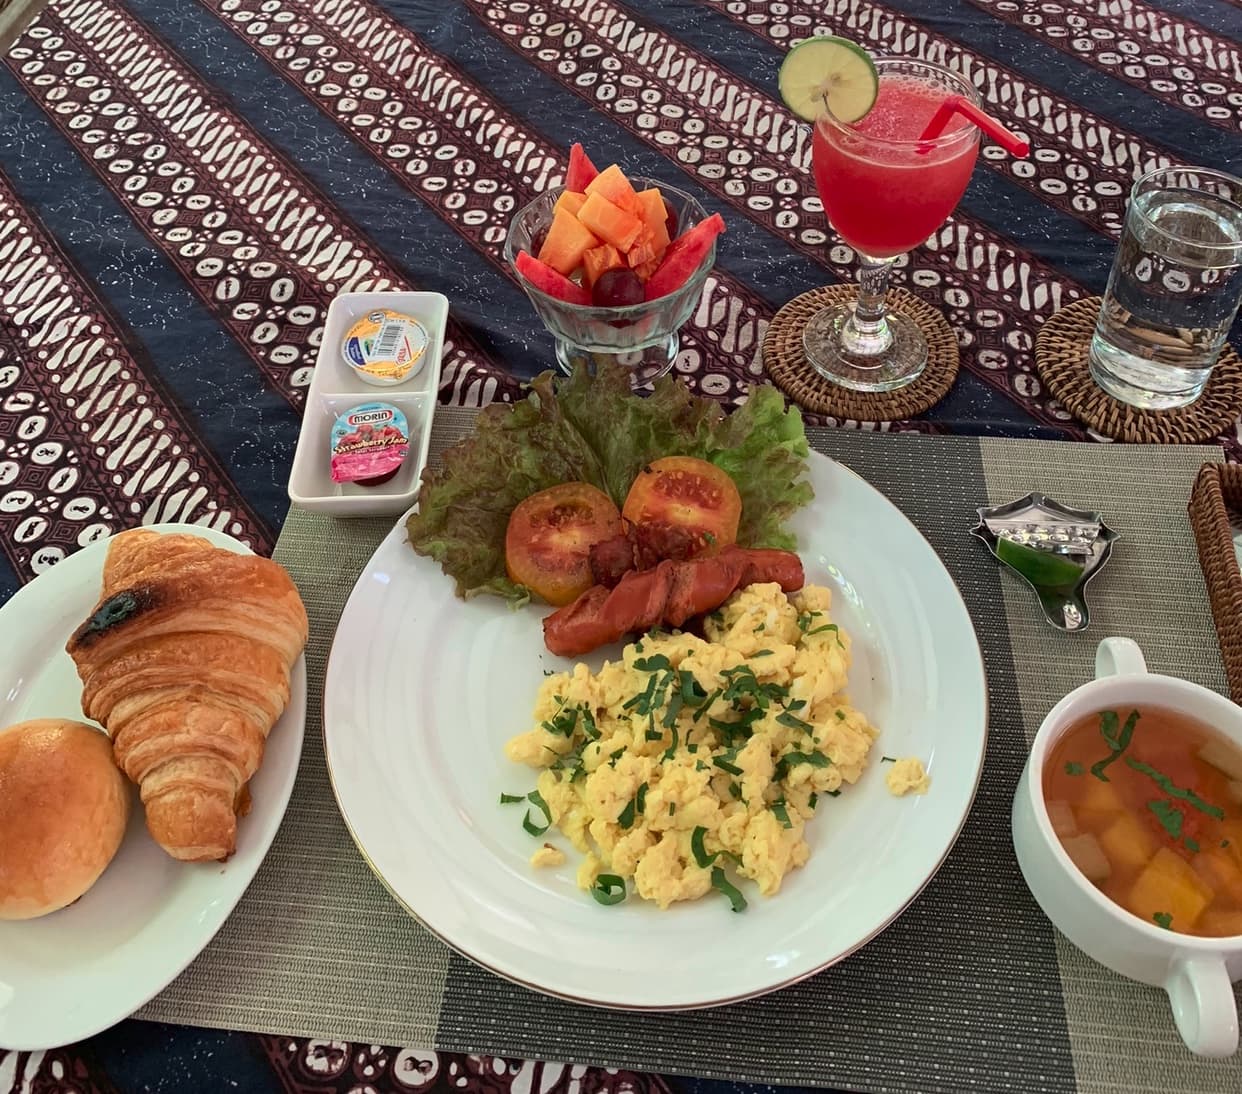 Фотография завтрака: выпечка, омлет, овощи, фрукты и сок.